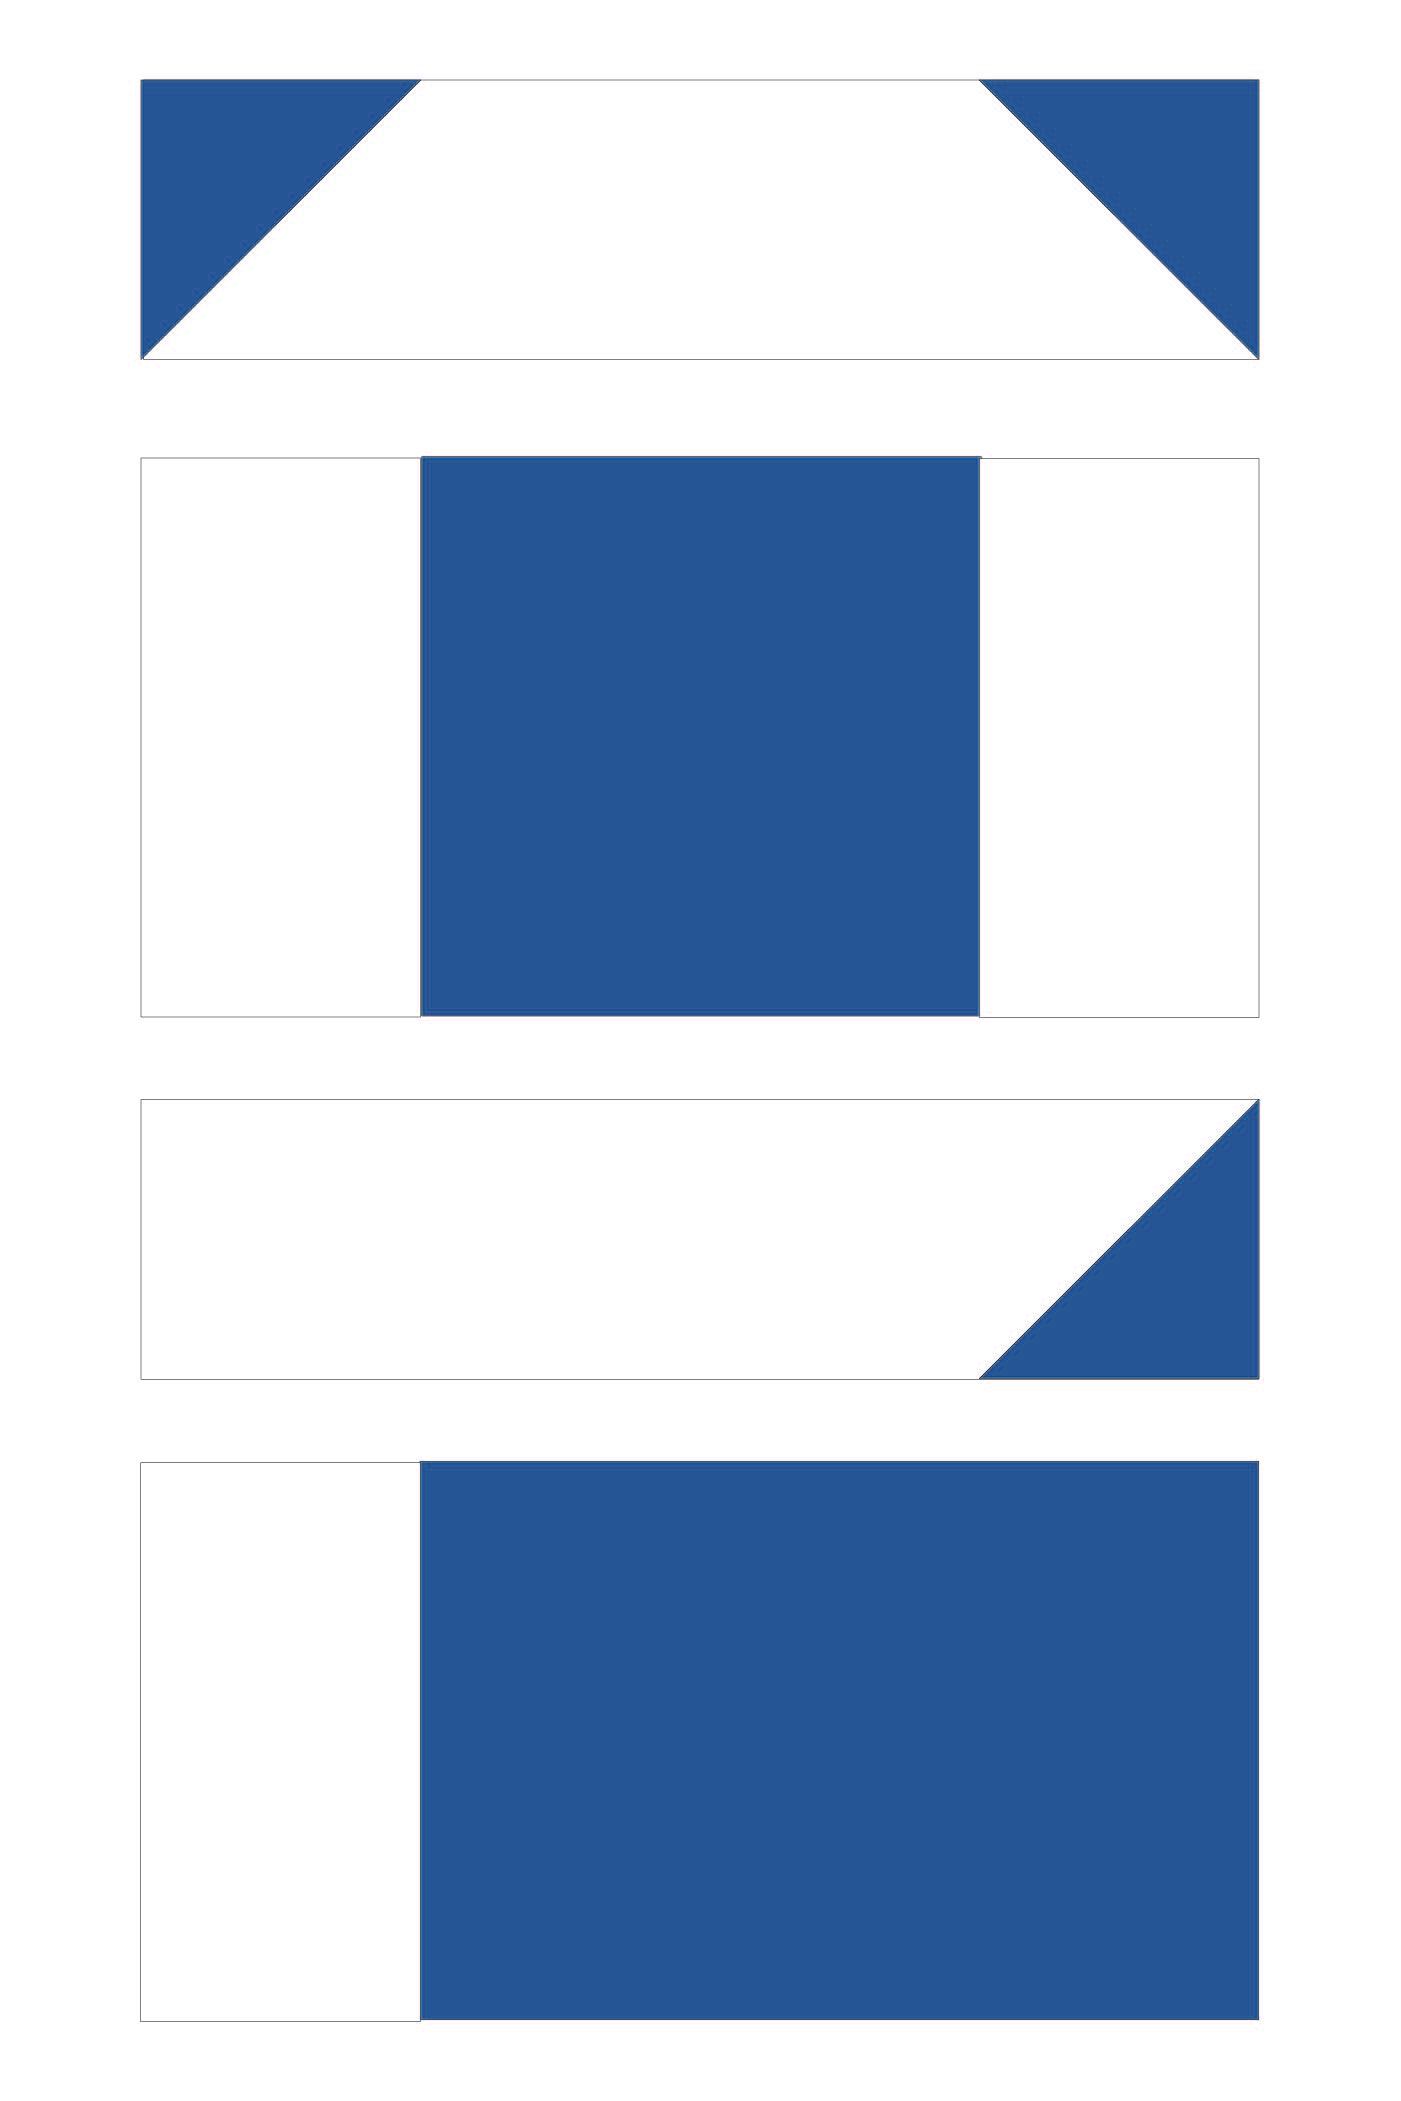 Schéma de construction de blocs de courtepointe en bleu et blanc